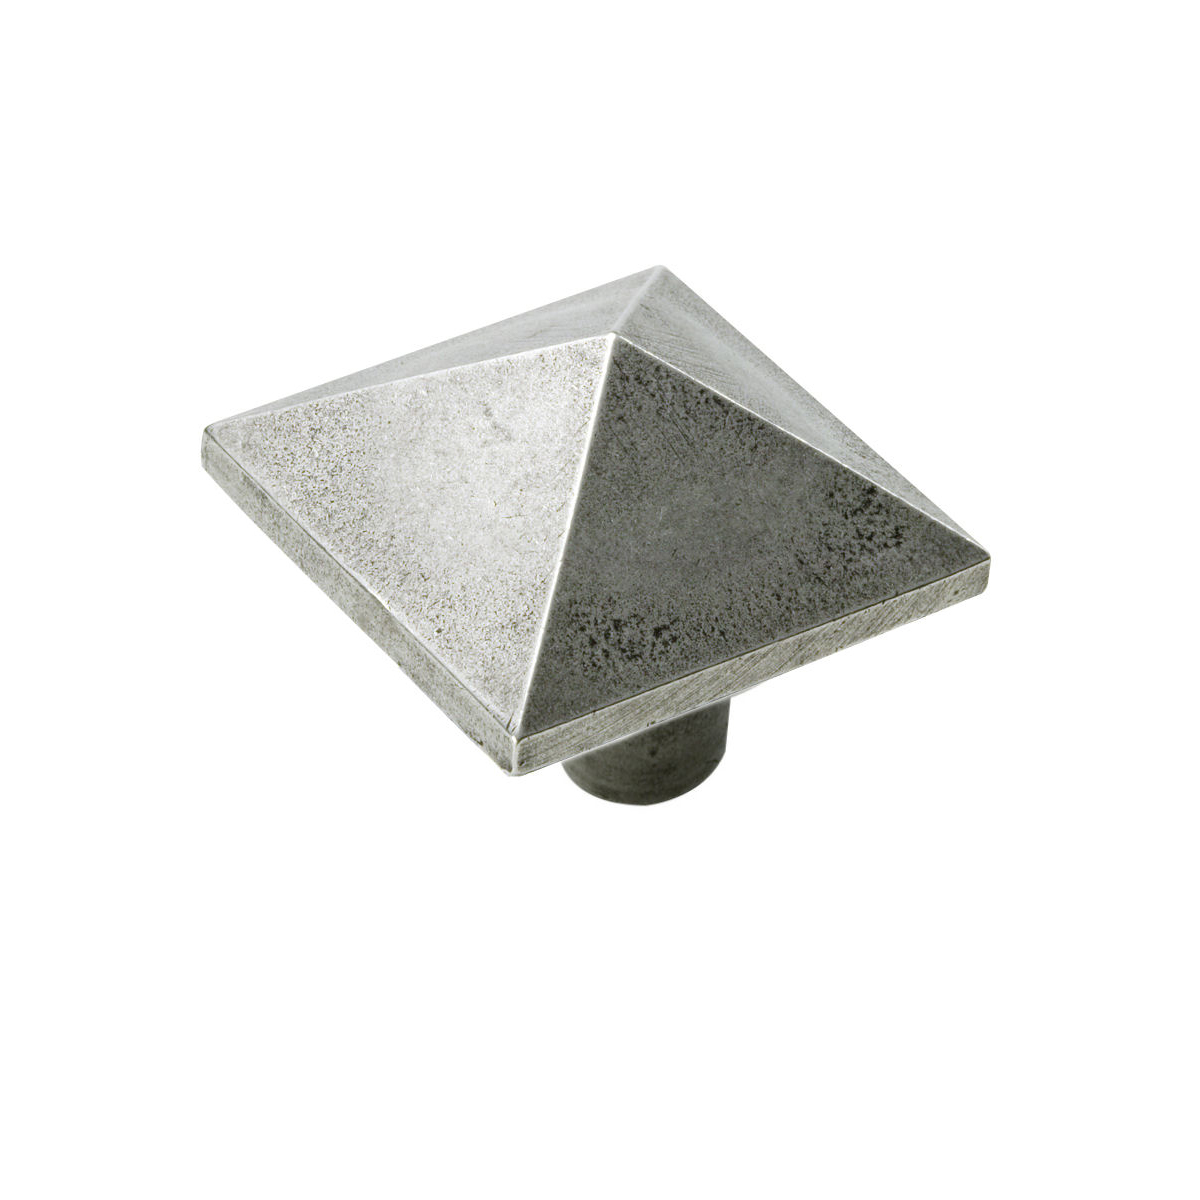 Pyramid pewter cupboard knob